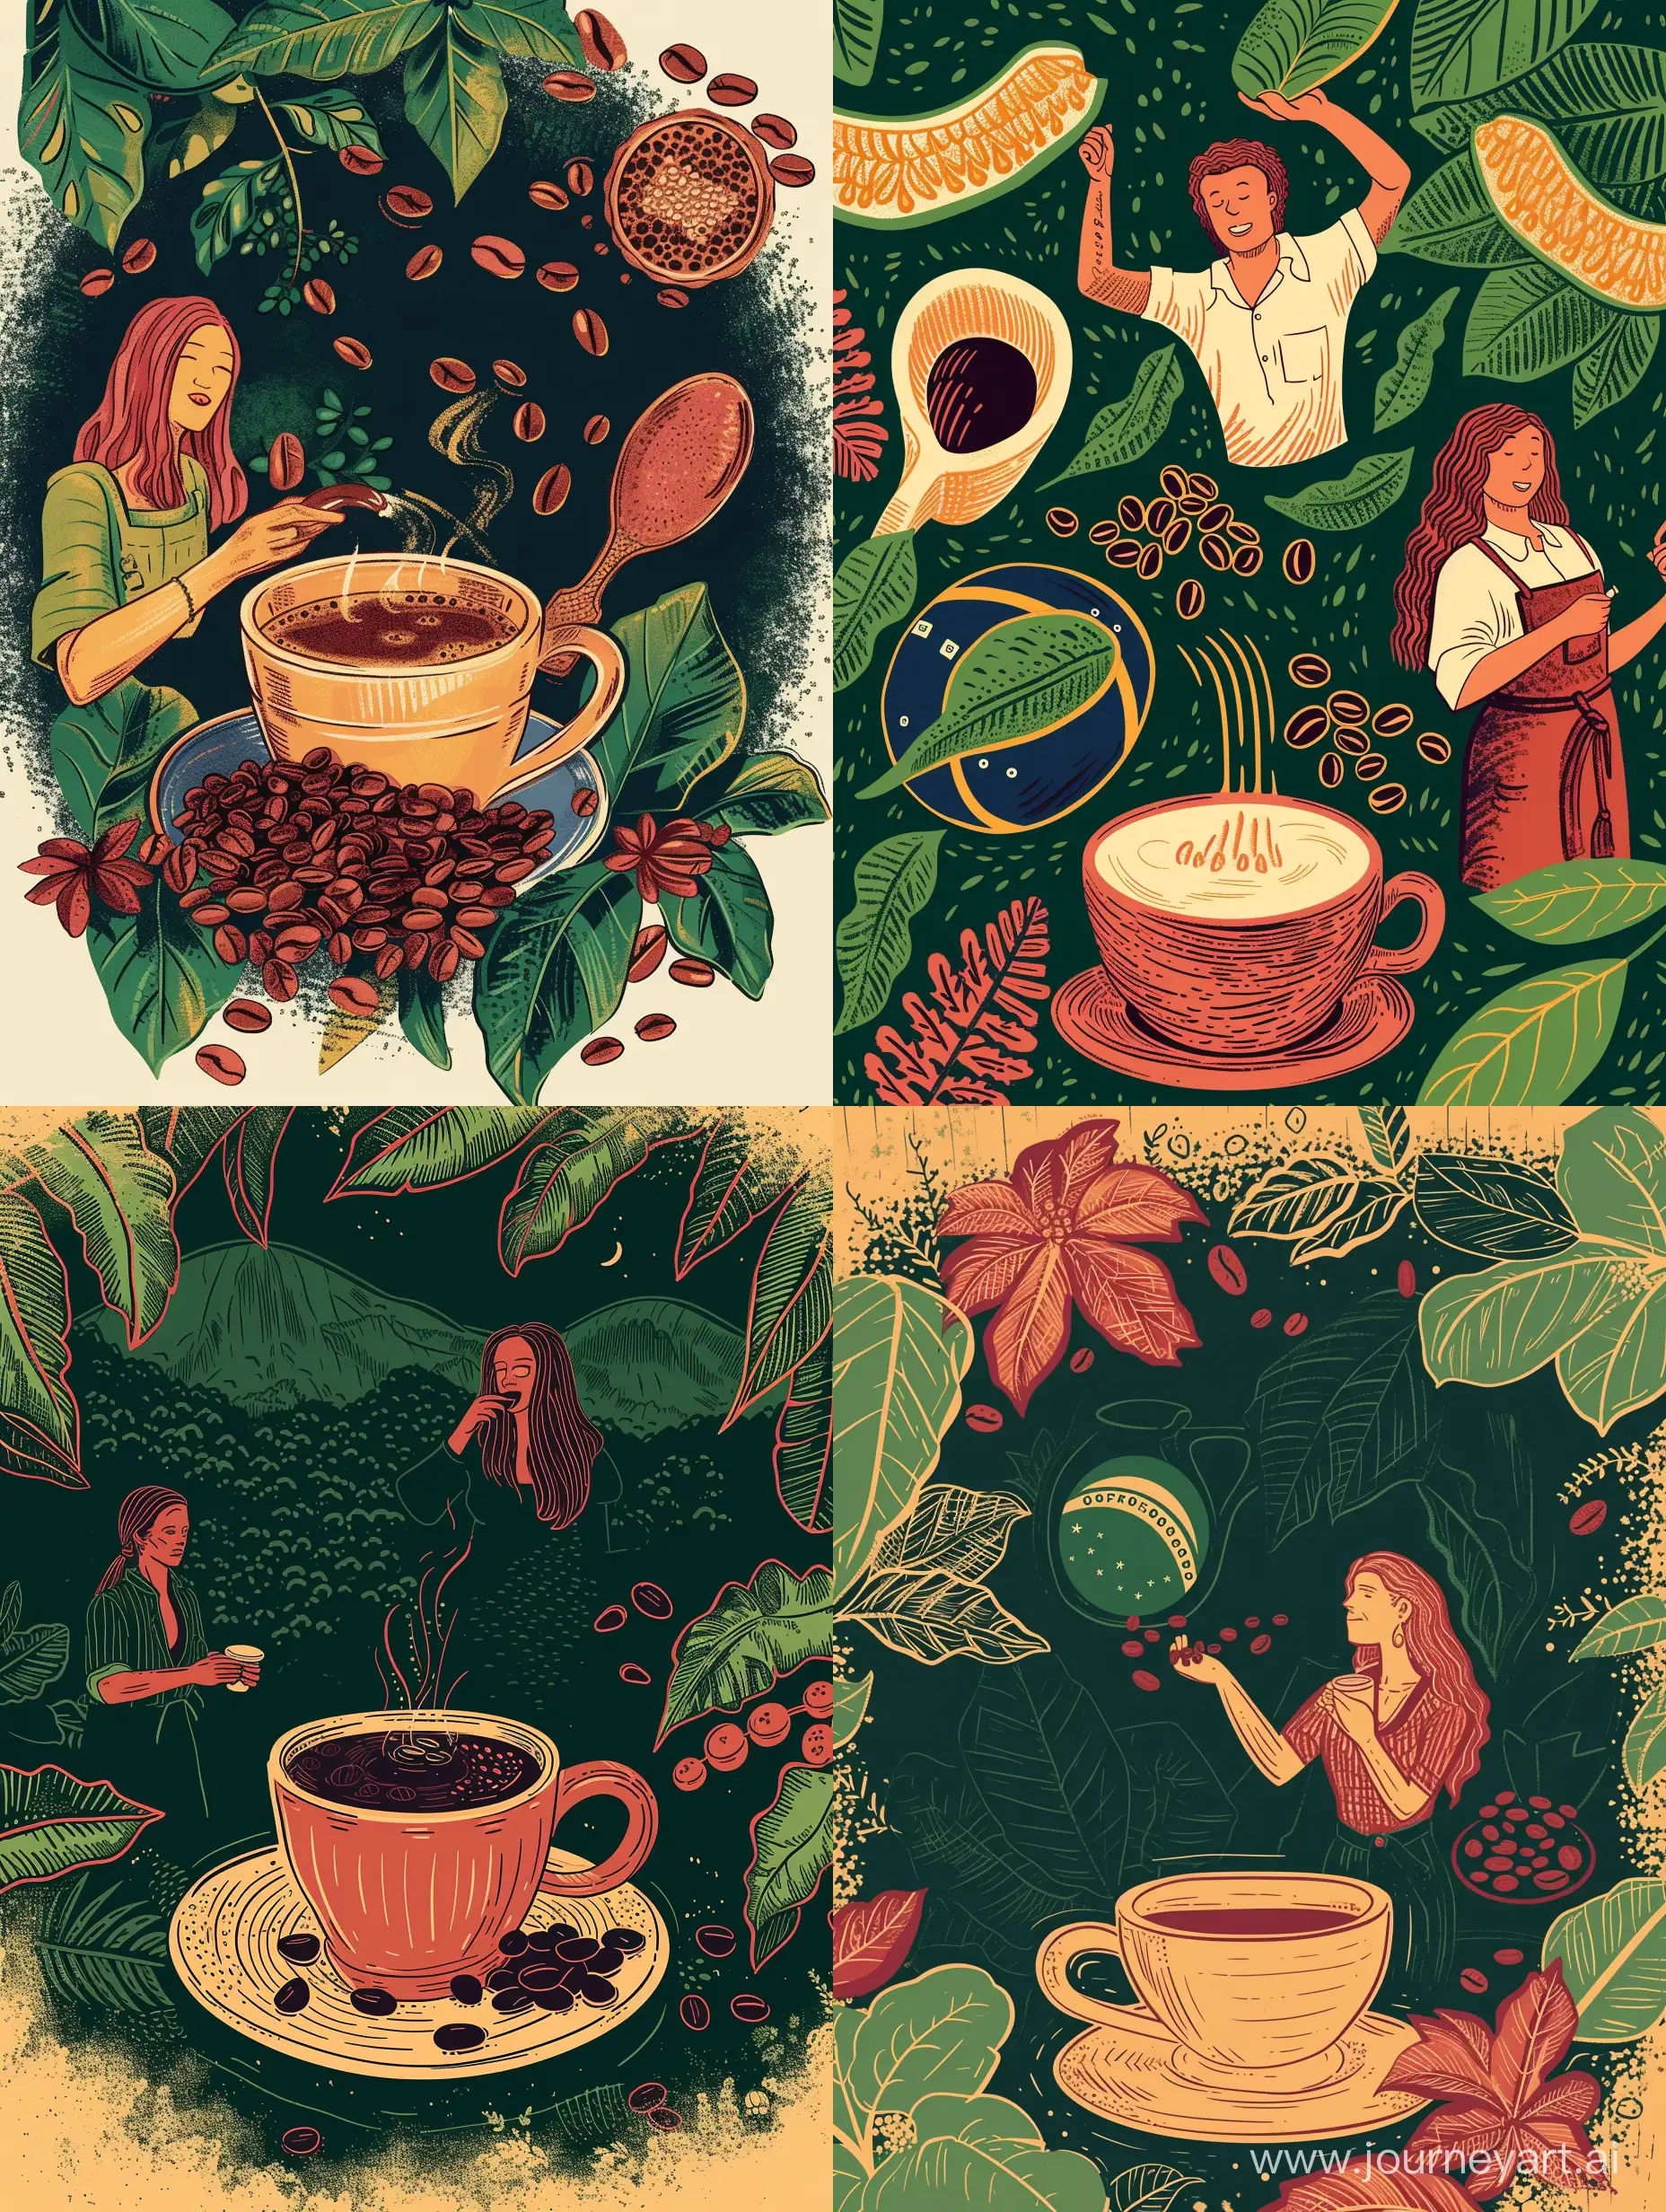 Иллюстрация кофе и символы Бразилии https://zansky.com.br/n19/wp-content/uploads/2020/05/zansky_virginia_1.jpg